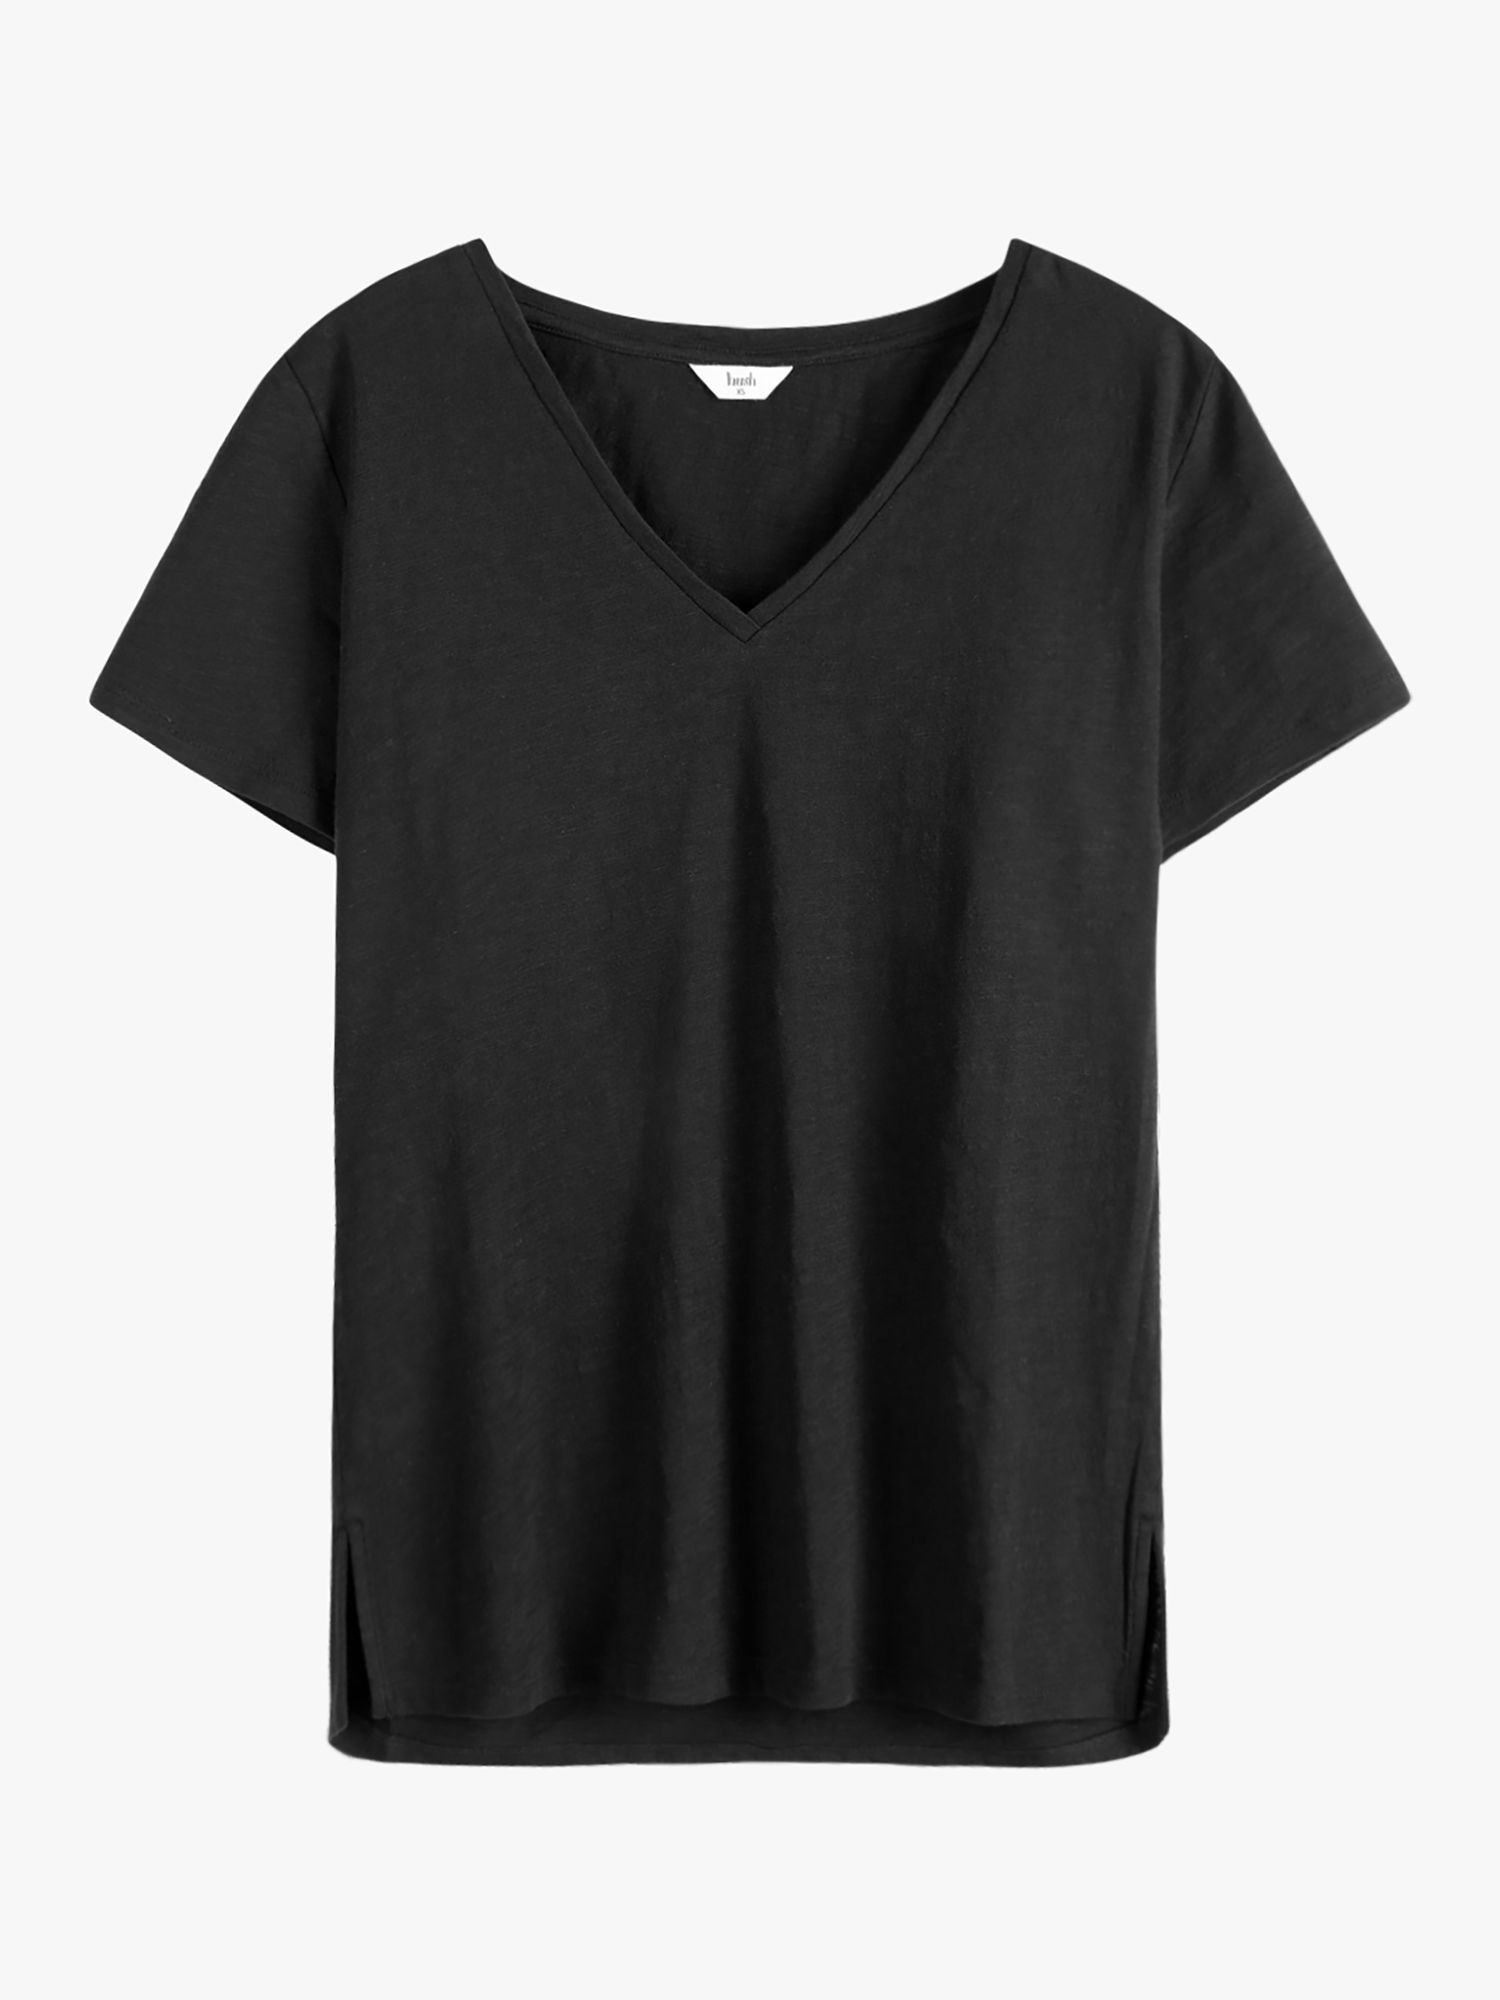 HUSH Cotton Cali Slub V-Neck T-Shirt, Black, XS